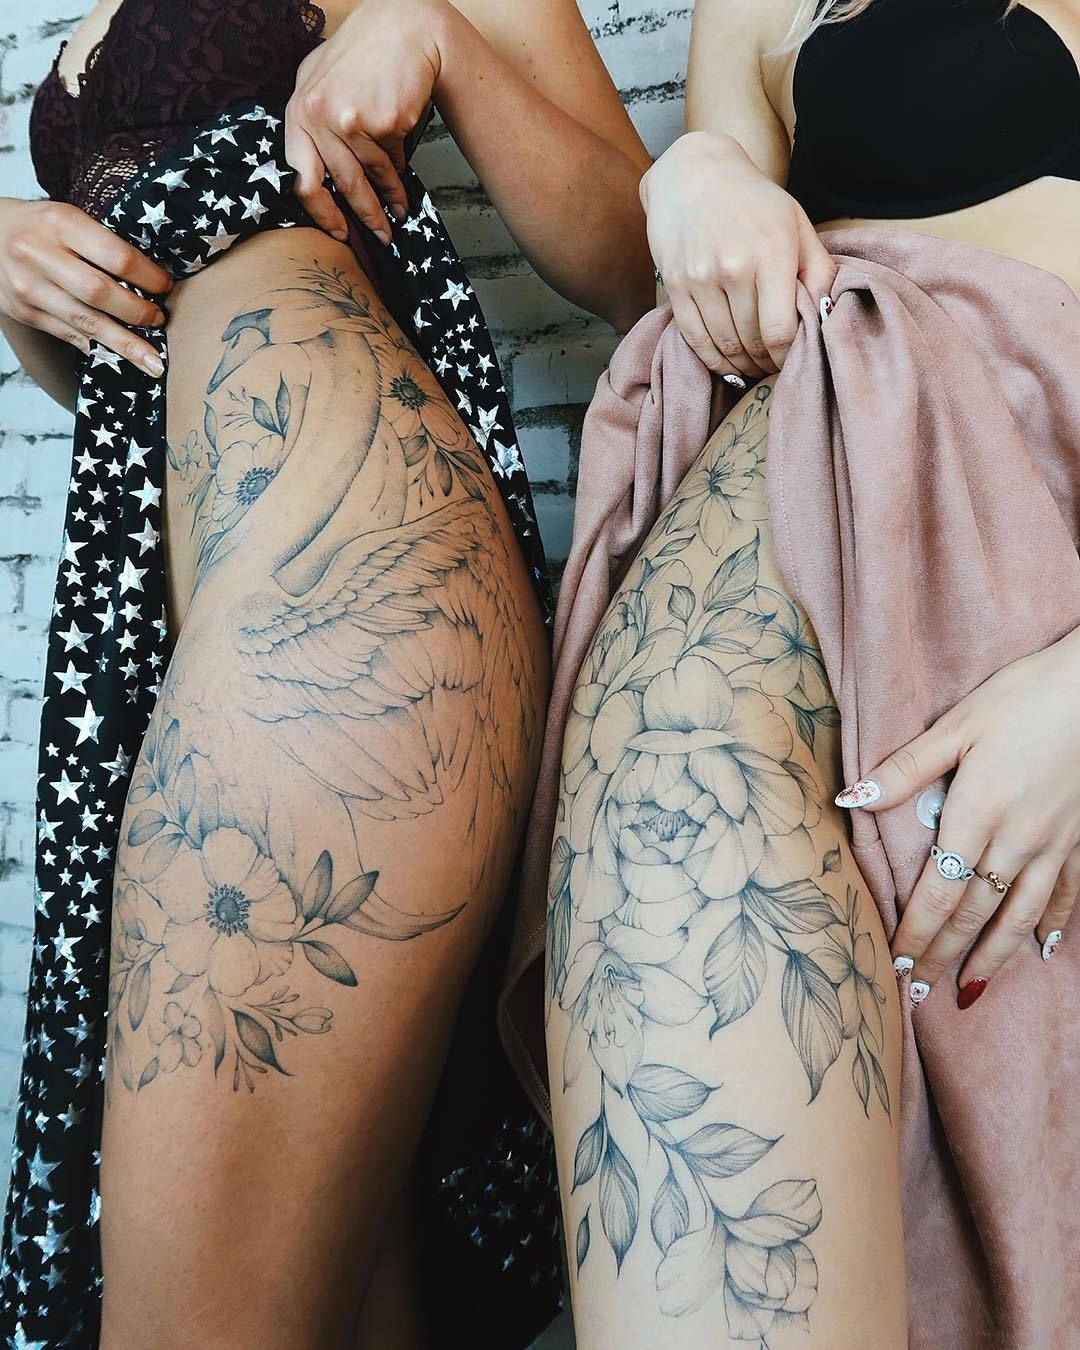 Obtenez des tatouages assortis avec votre meilleure amie - quelle façon amusante de faire passer votre relation au niveau supérieur!